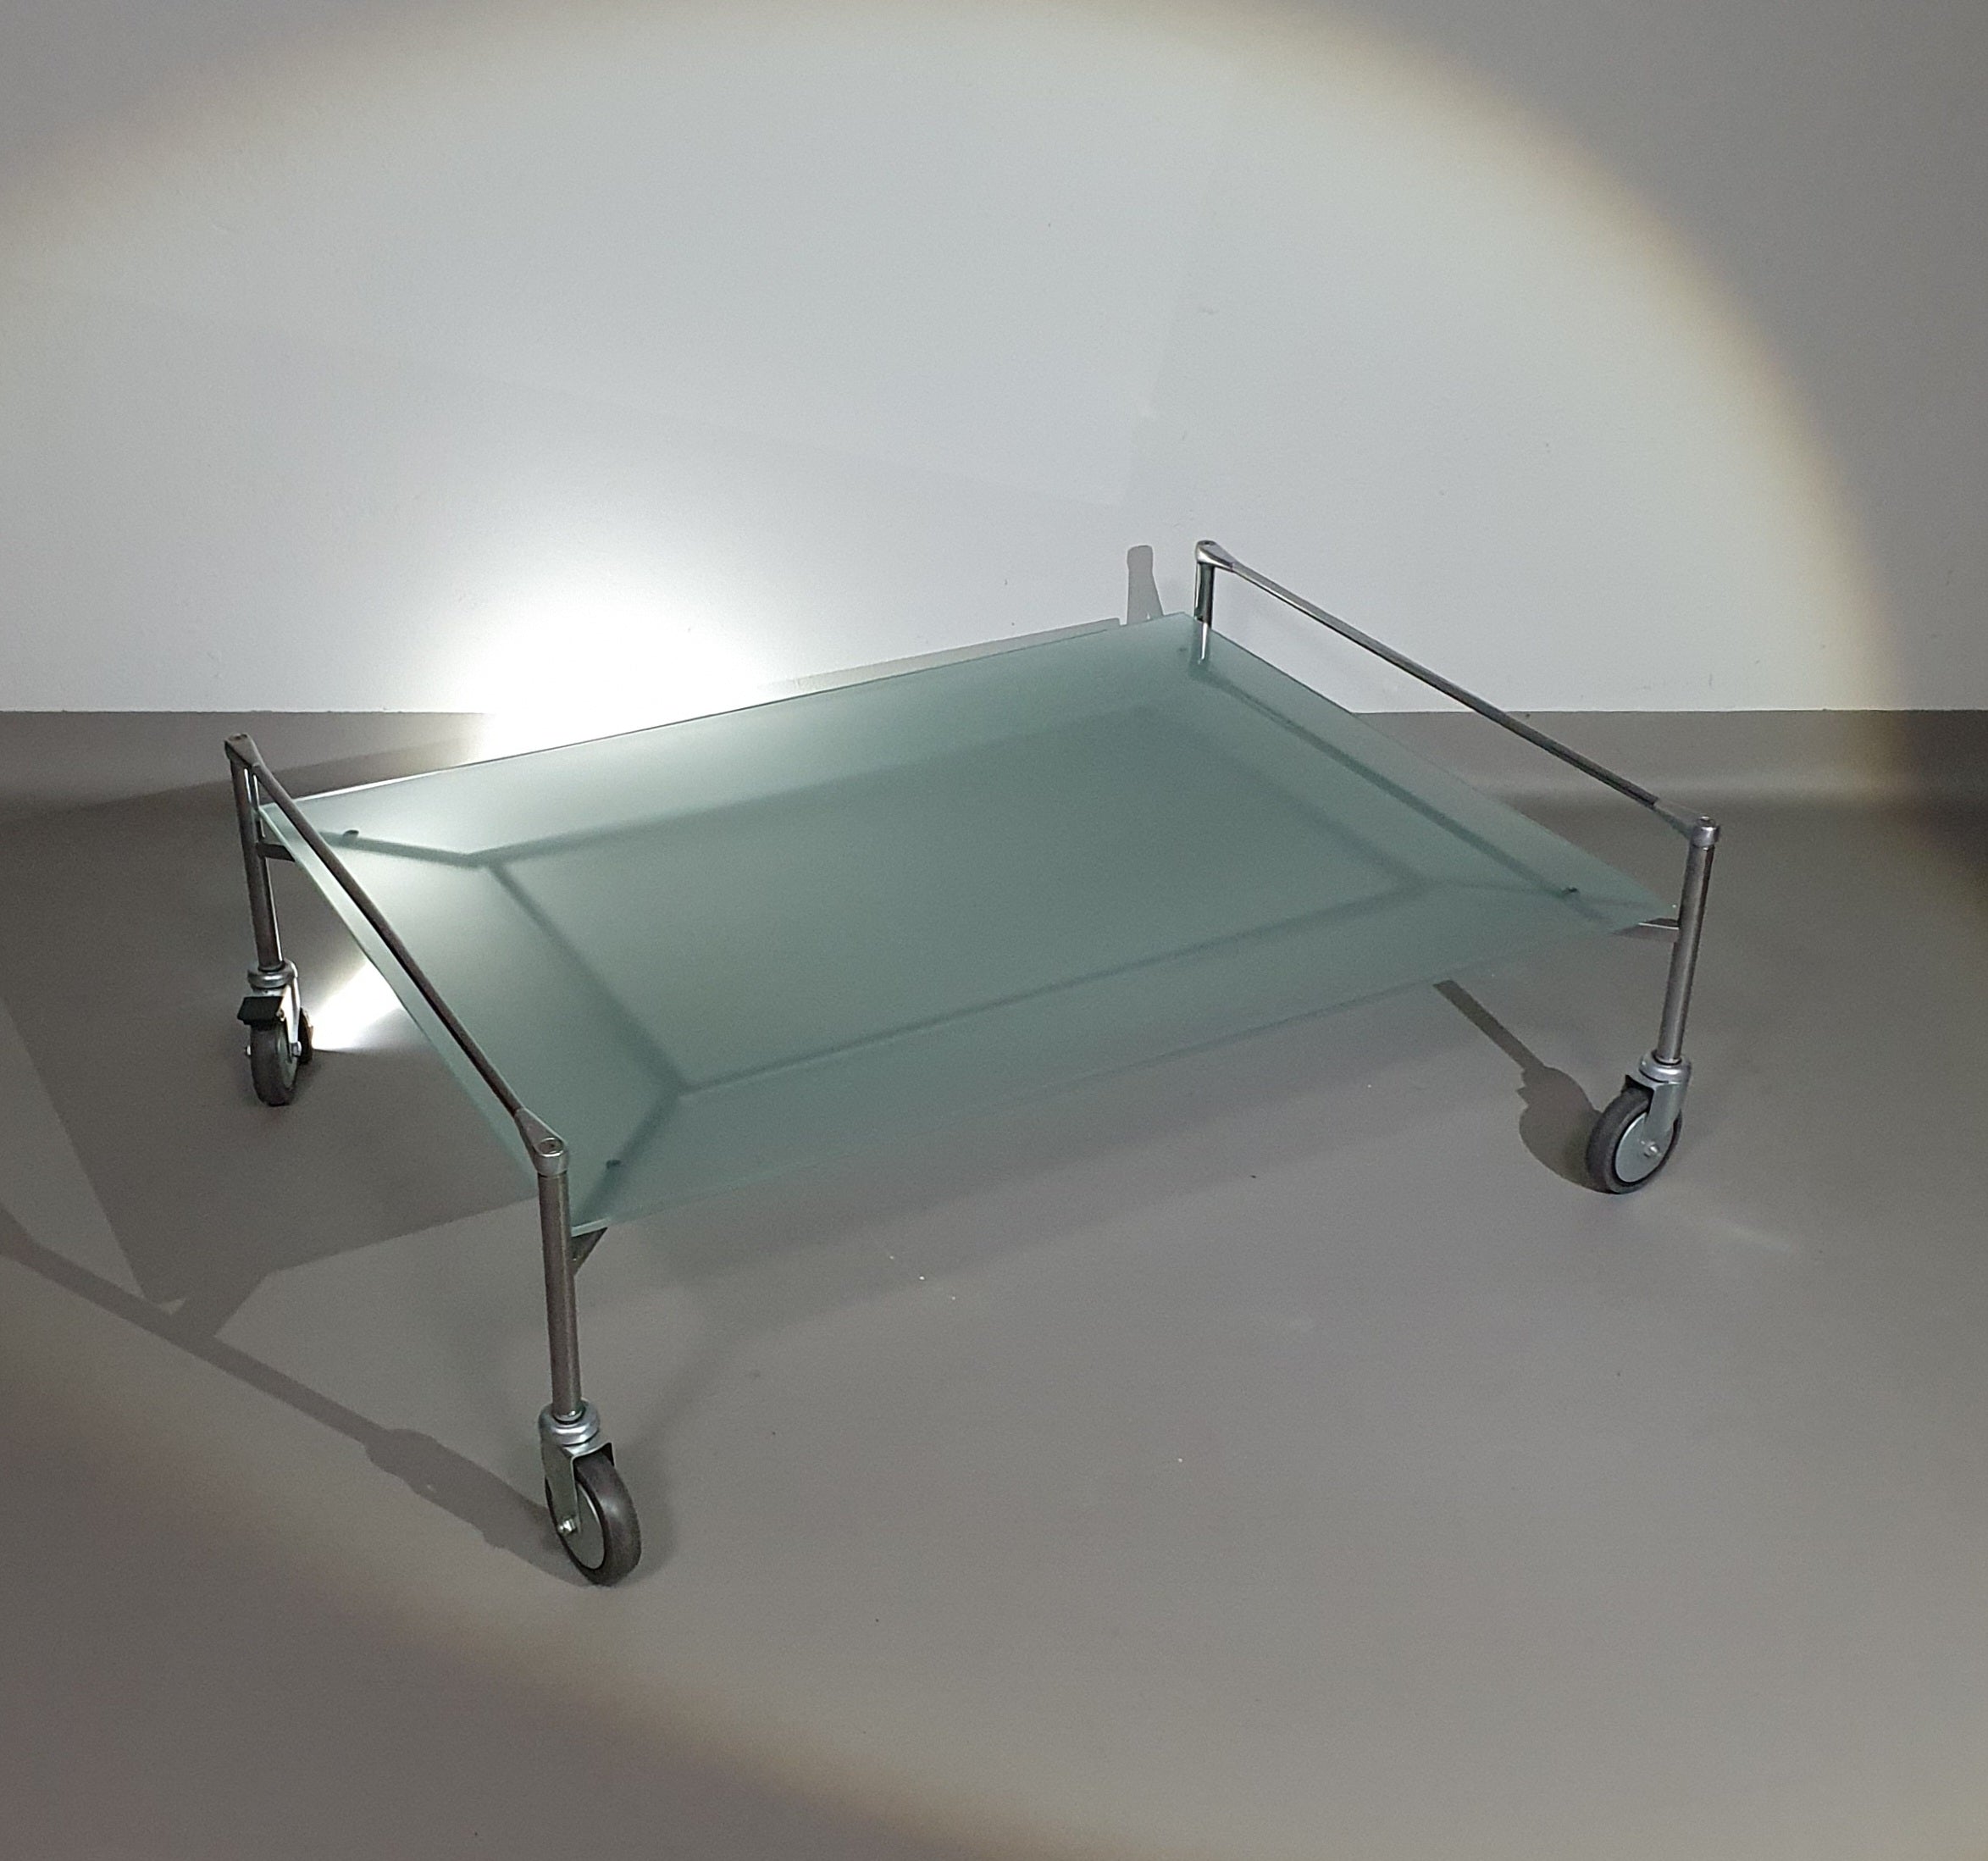 Driade Free Man 2 Glass Table

By M. Zanuso